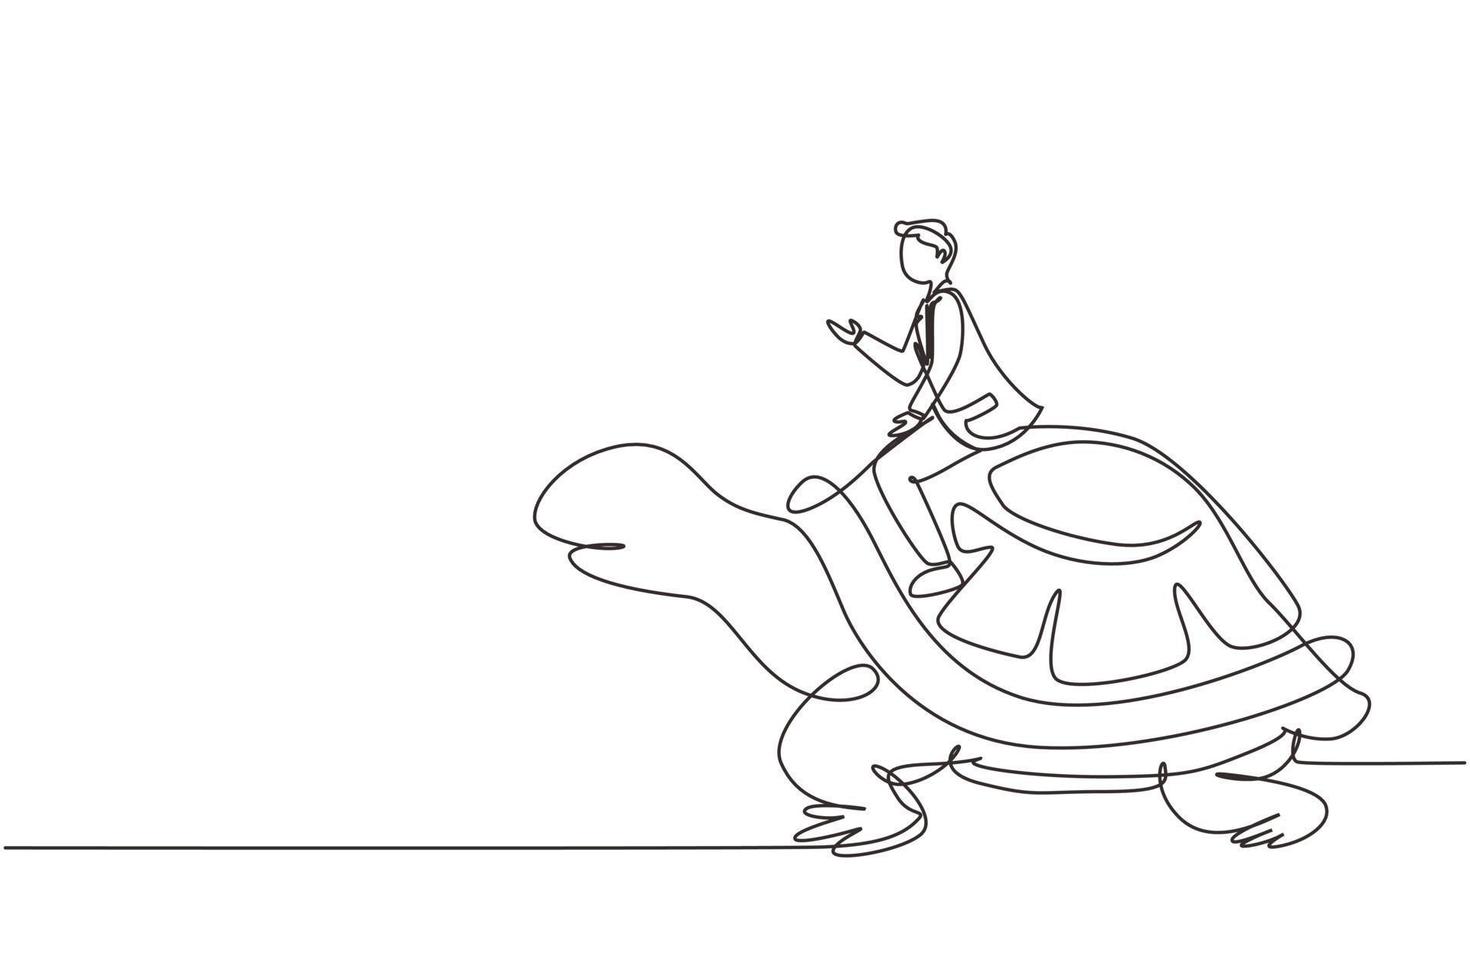 uomo d'affari di disegno a linea continua che cavalca un'enorme tartaruga. movimento lento verso il successo, manager che guida una tartaruga gigante. concetto di concorrenza tra imprese. illustrazione grafica vettoriale di disegno a linea singola